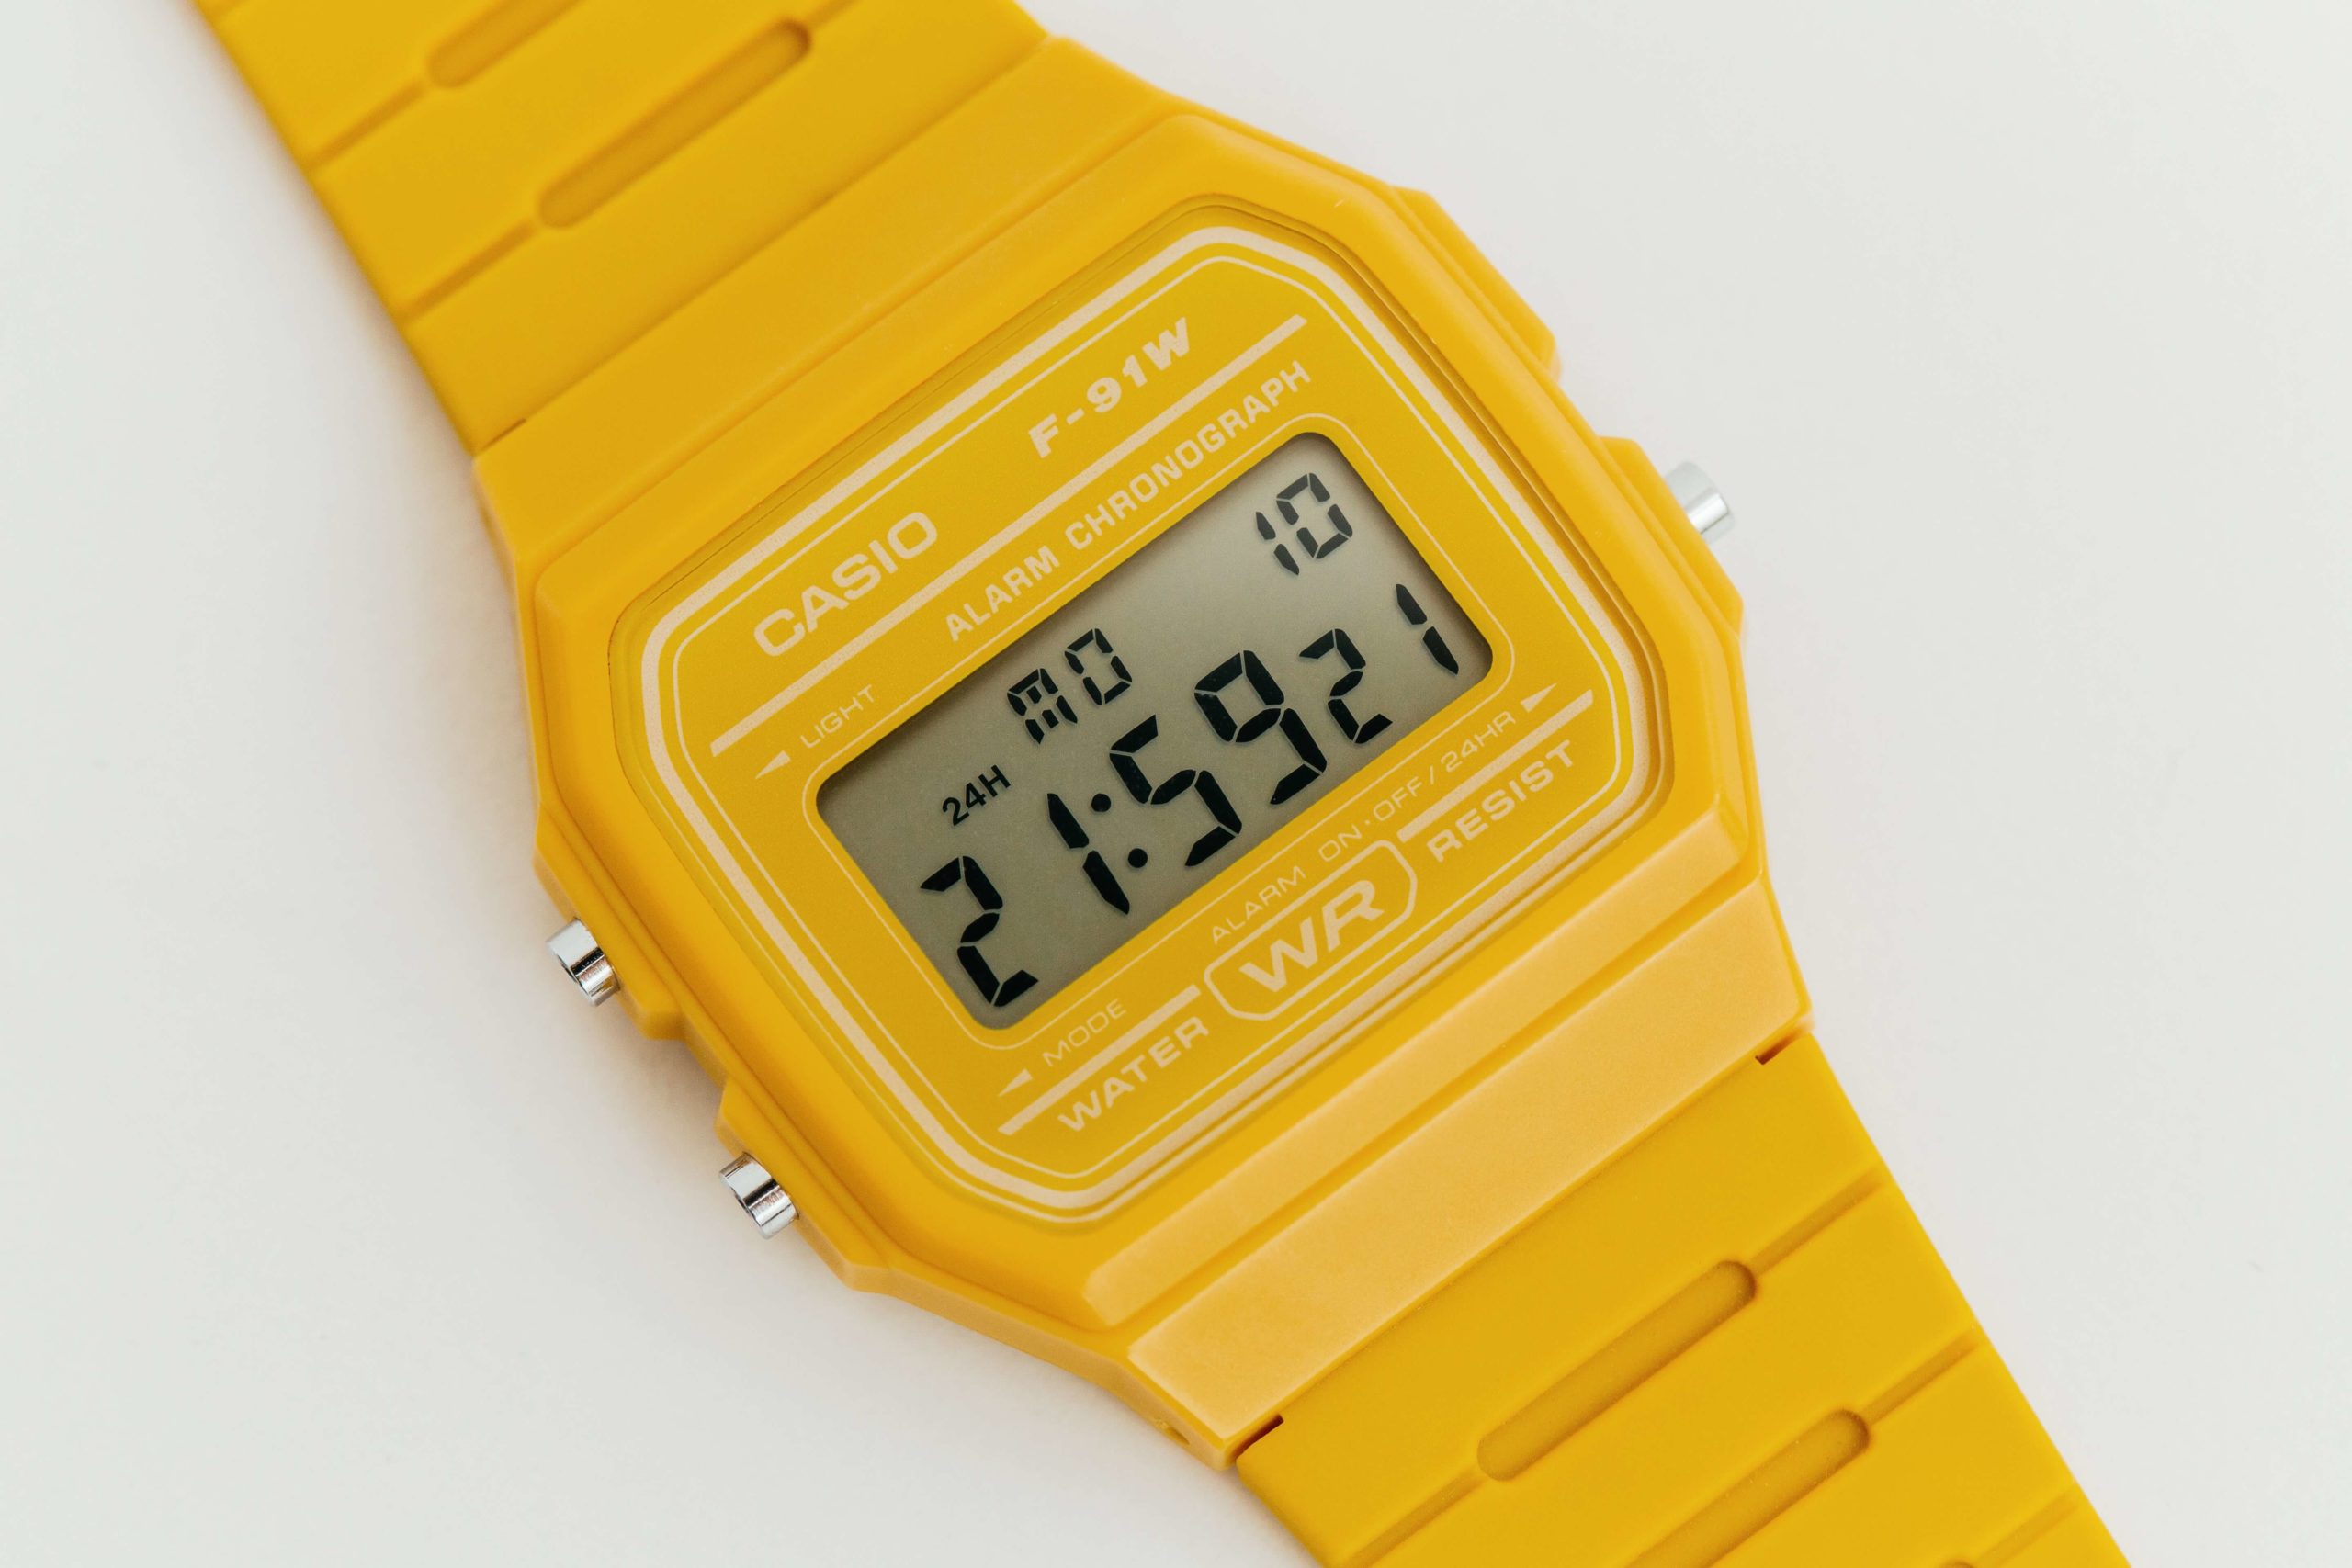 Casio Digital Watch (F91W-1): Turn Off Hourly Beep